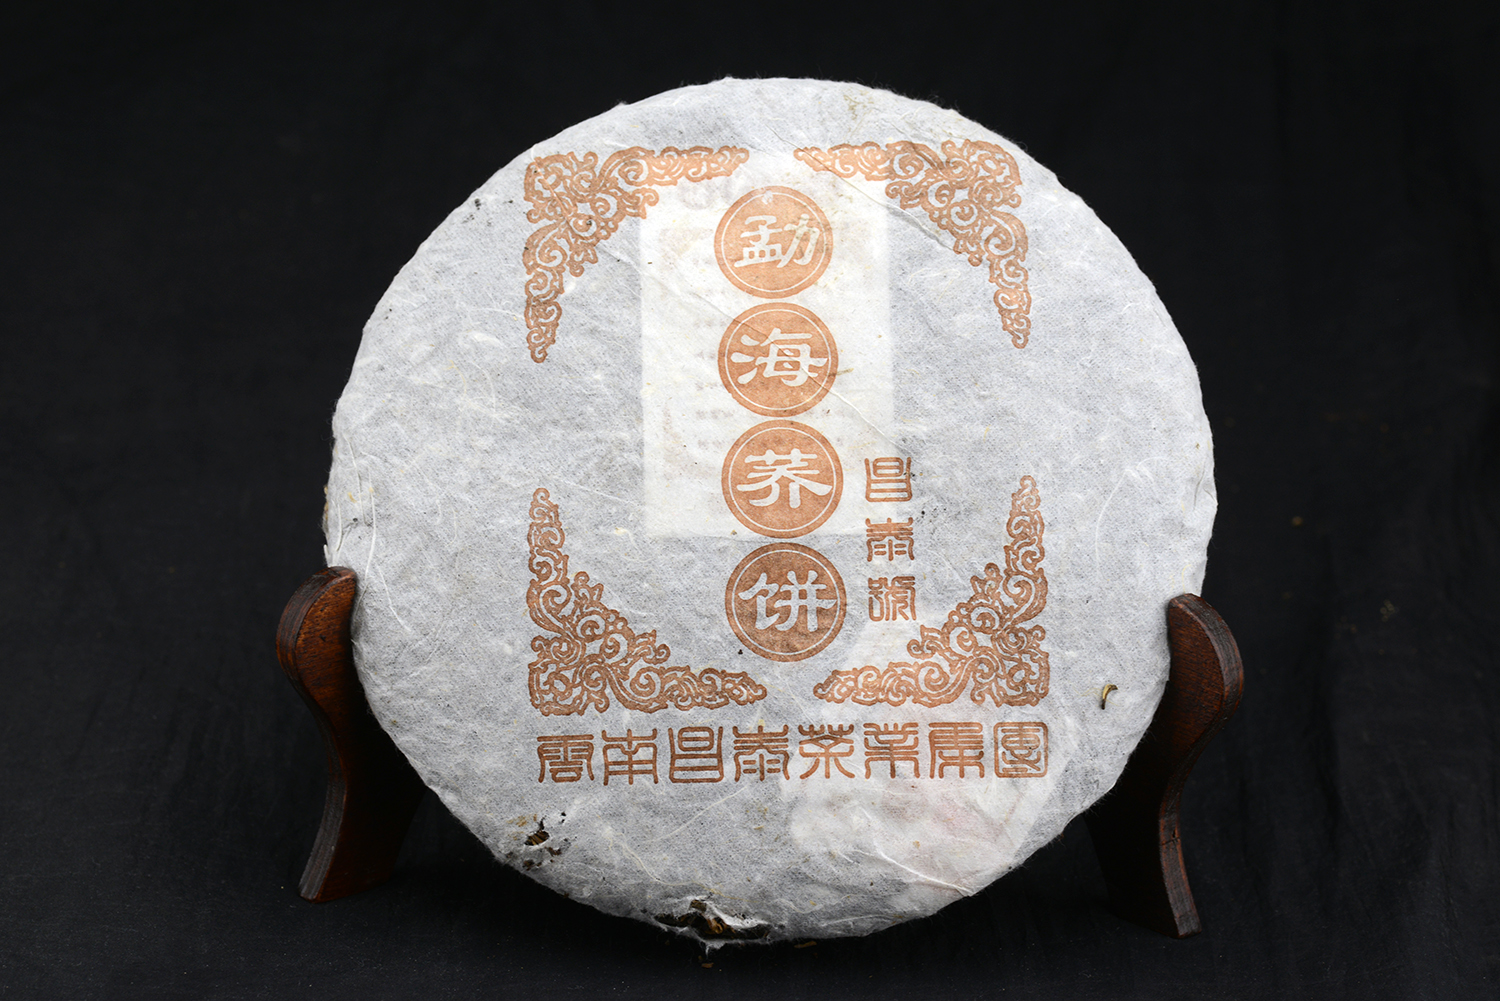 Cang Tai Hao Menghai Qiao Bing cha sheng puerh tea